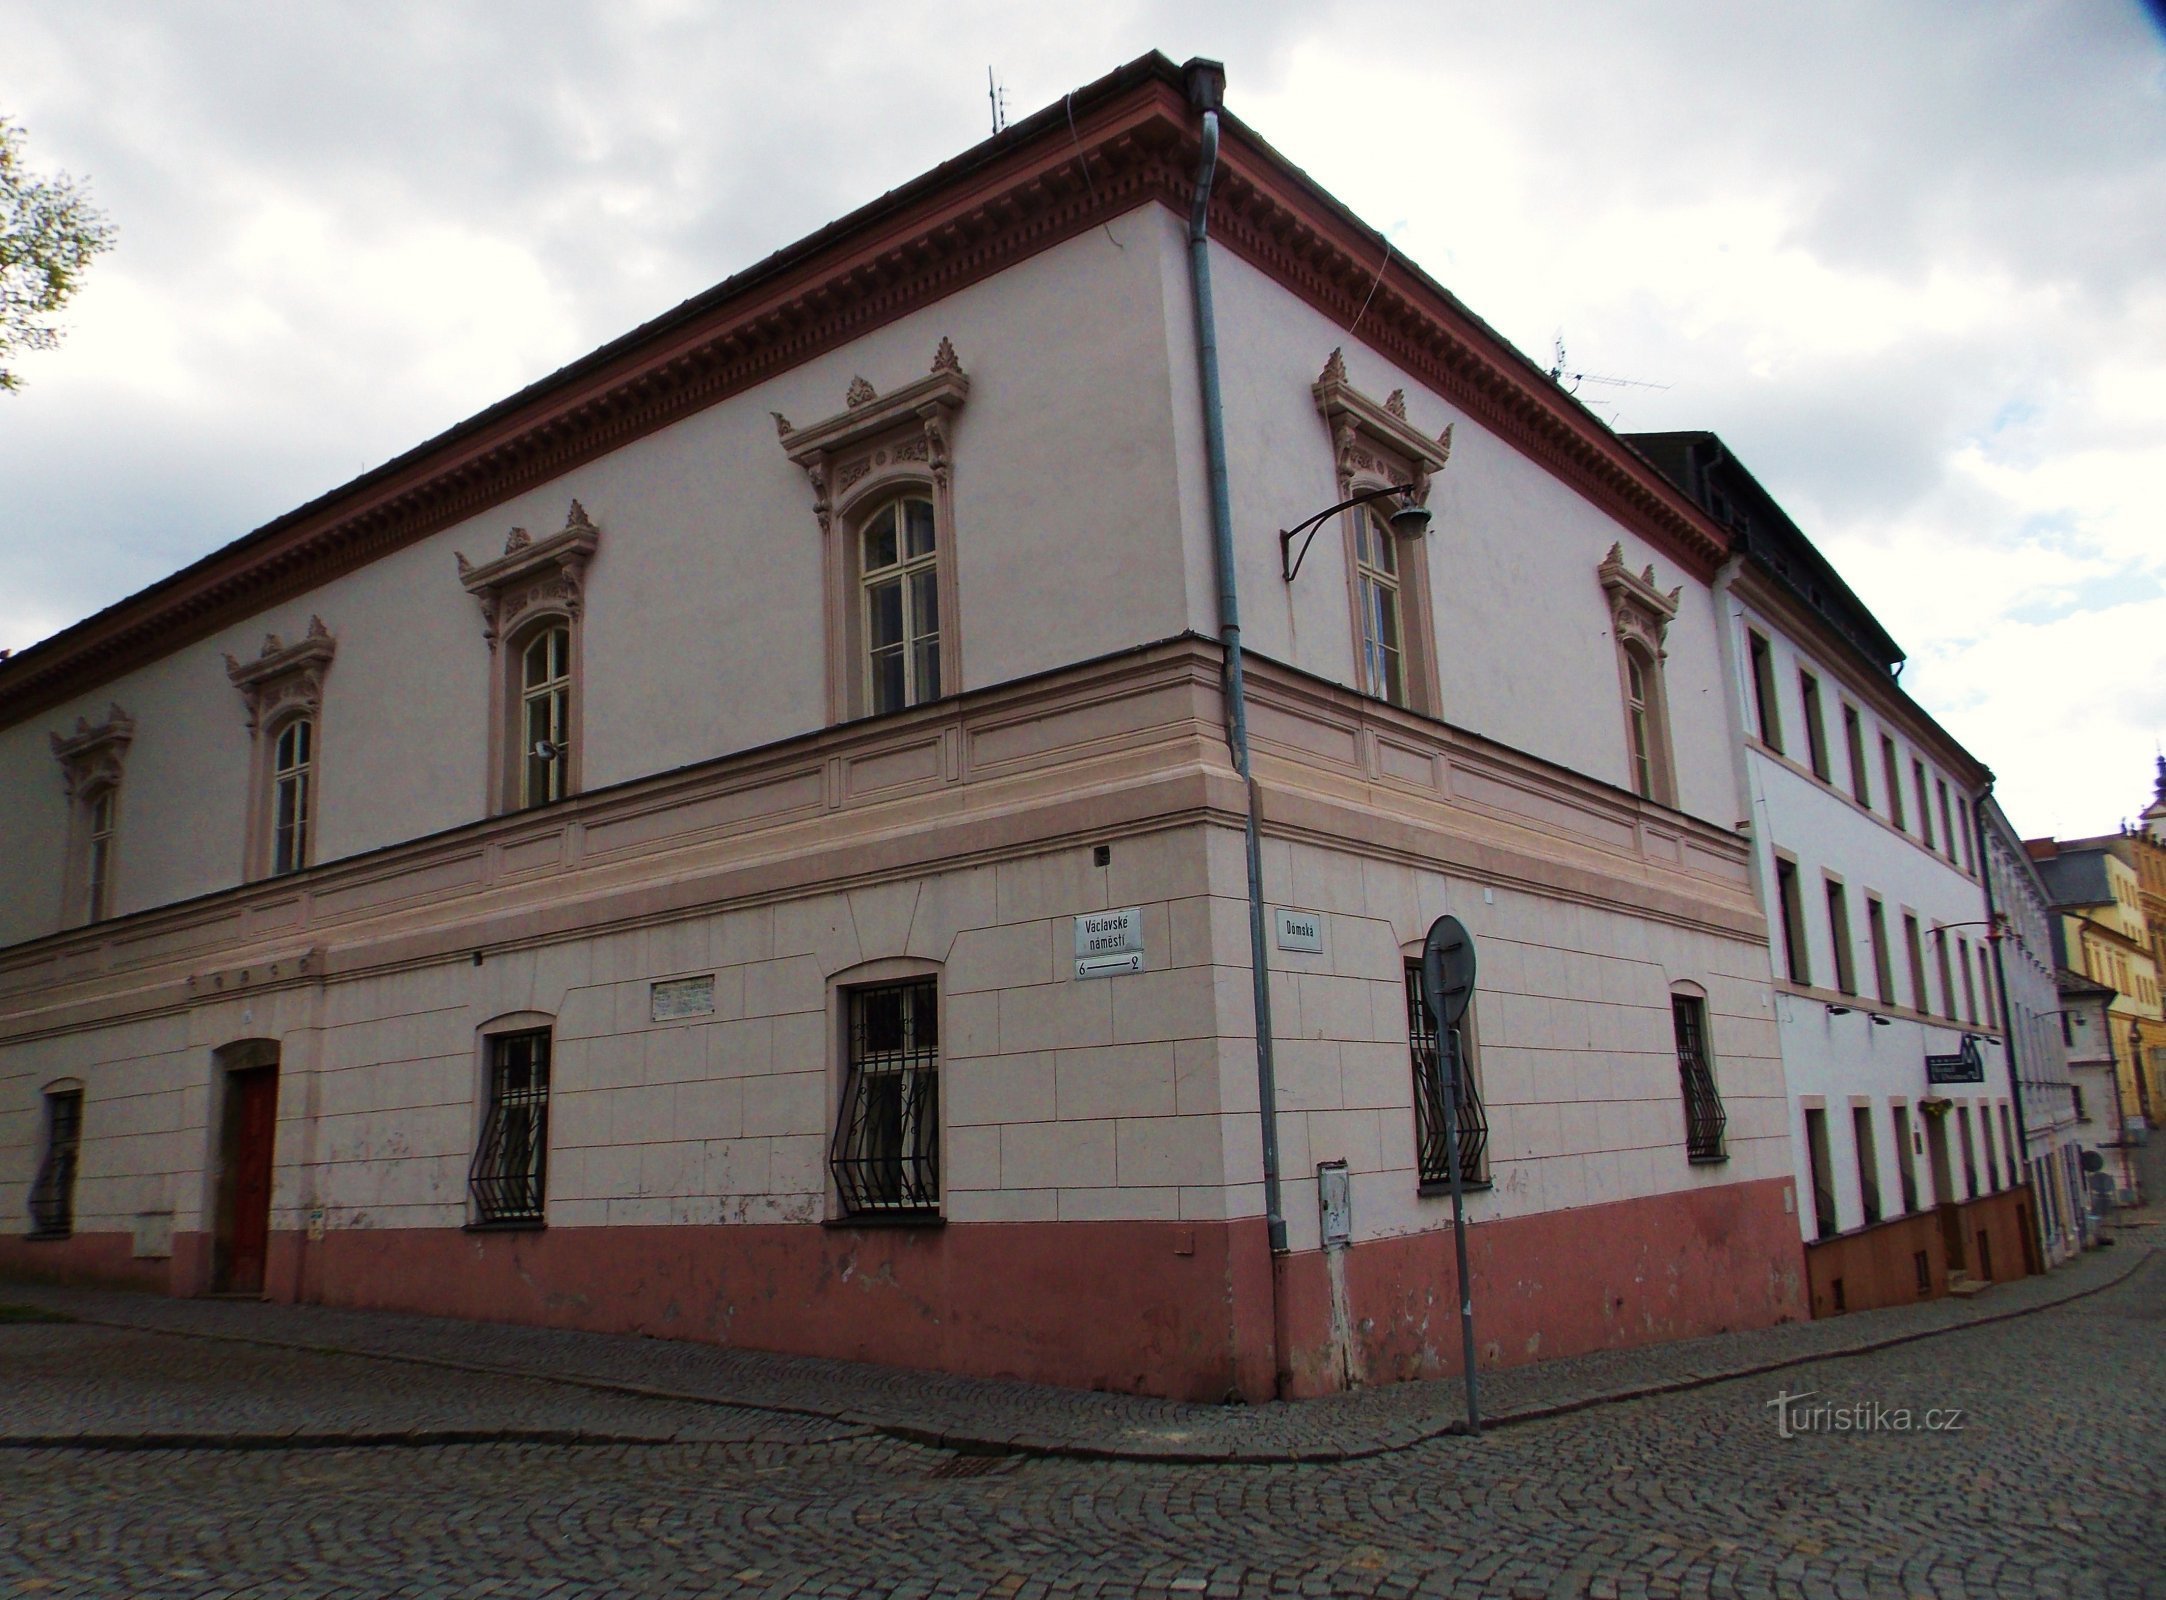 Points d'intérêt sur la place Venceslas à Olomouc